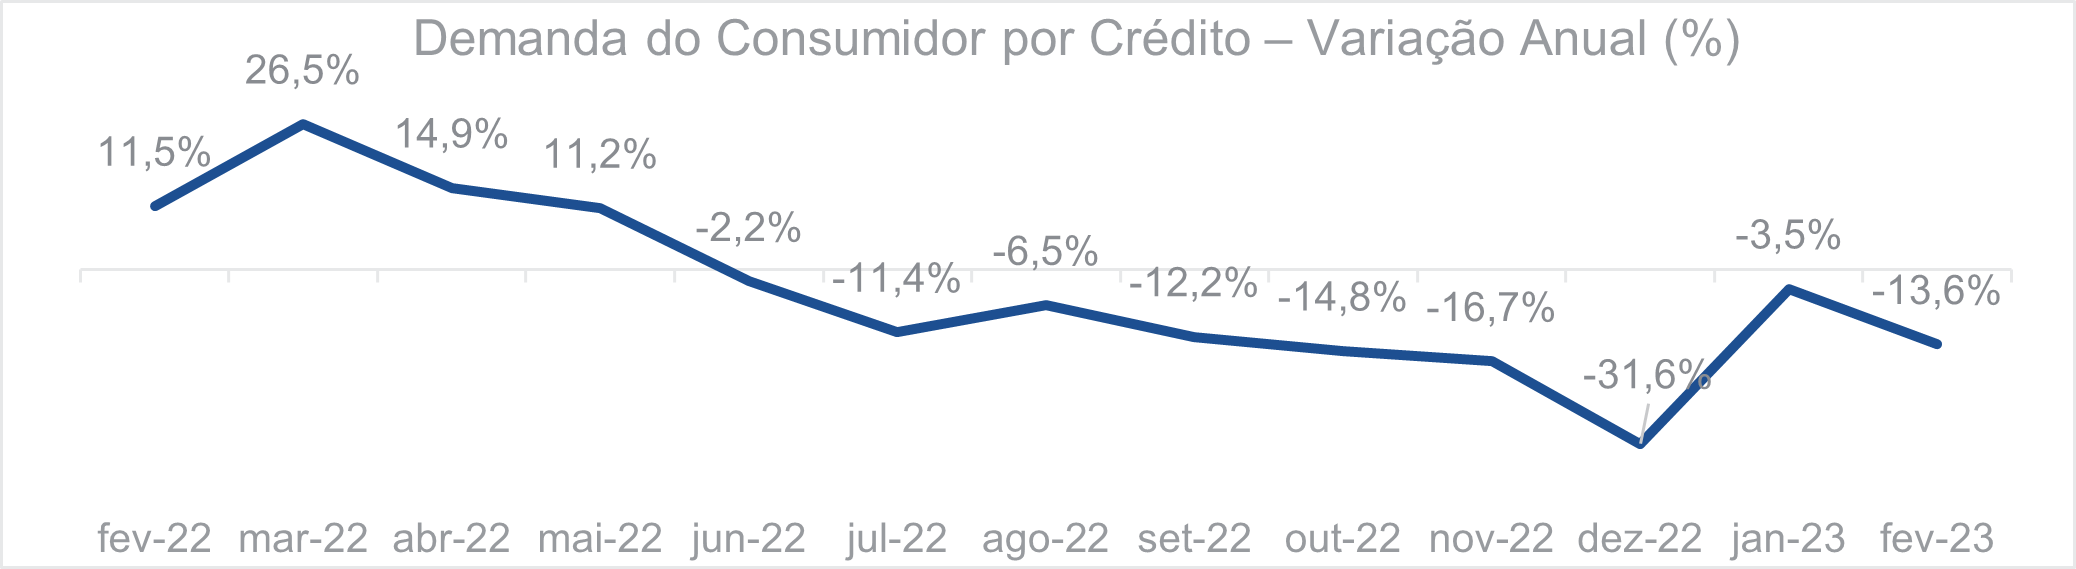 Demanda do consumidor por crédito Variação anual